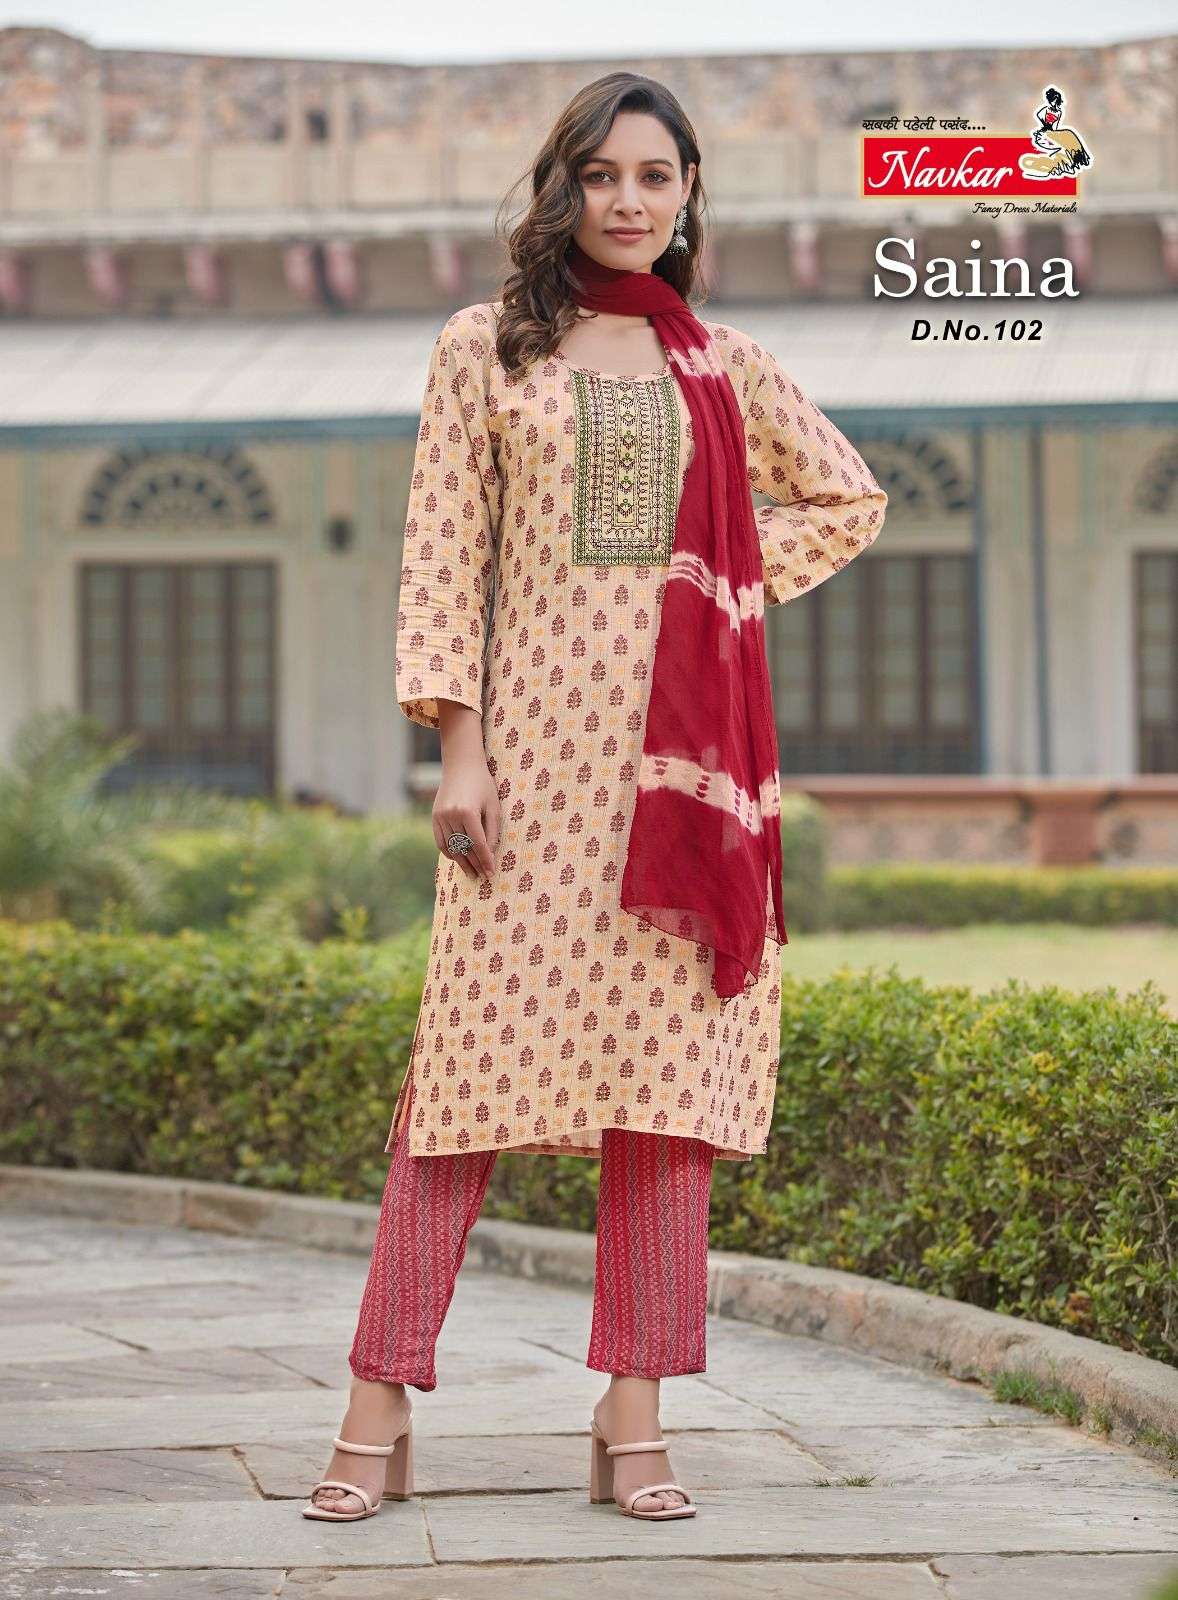 navkar saina 101-108 series unstich designer salwar kameez catalogue online dealer surat 